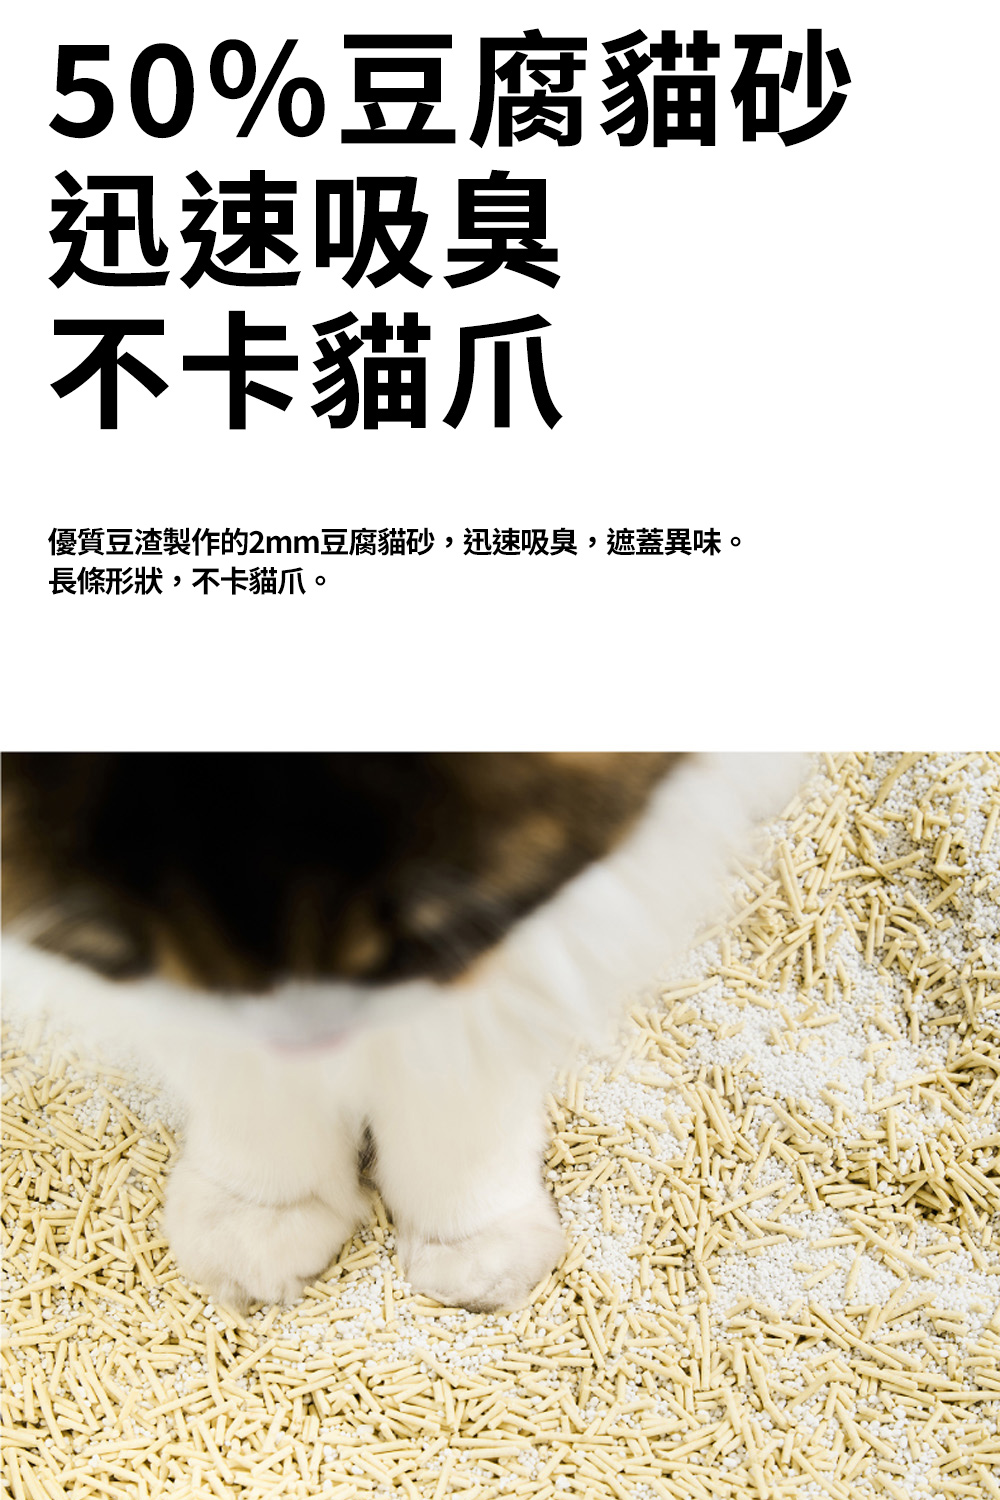 50%豆腐貓砂迅速吸臭不卡貓爪優質豆渣製作的2mm豆腐貓砂,迅速吸臭,遮蓋異味。長條形狀,不卡貓爪。